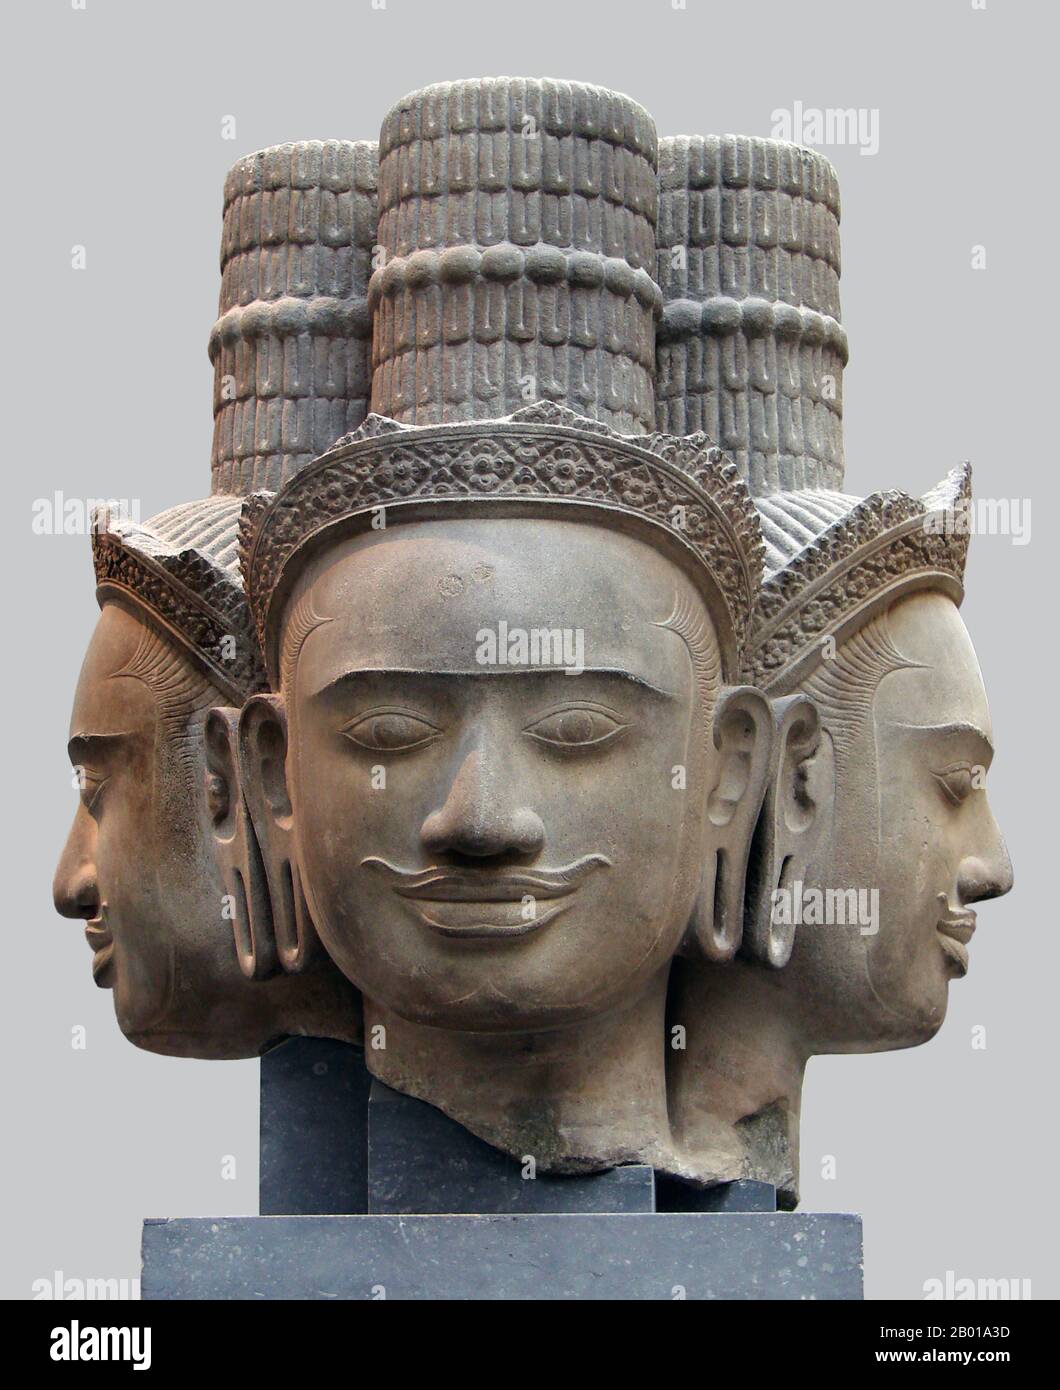 Cambogia: Testa tripla di Brahma da Phnom Bok, Siem Reap, ora nel Musée Guimet, Parigi, 9th-10th secolo. Phnom Bok è una collina nel nord-est del Baray orientale in Cambogia, con un prasat (tempio) dello stesso nome costruito su di esso. Si tratta di una 'trilogia di montagne', ognuna delle quali ha un tempio con una disposizione simile. La creazione del tempio è accreditata al regno di Yasovarman i (889–910) tra i secoli 9th e 10th ed è stata fondata dopo che ha spostato la sua capitale ad Angkor e la ha chiamata Yasodharapura. Gli altri due templi gemellati sono Phnom Bakheng e Phnom Krom. Foto Stock